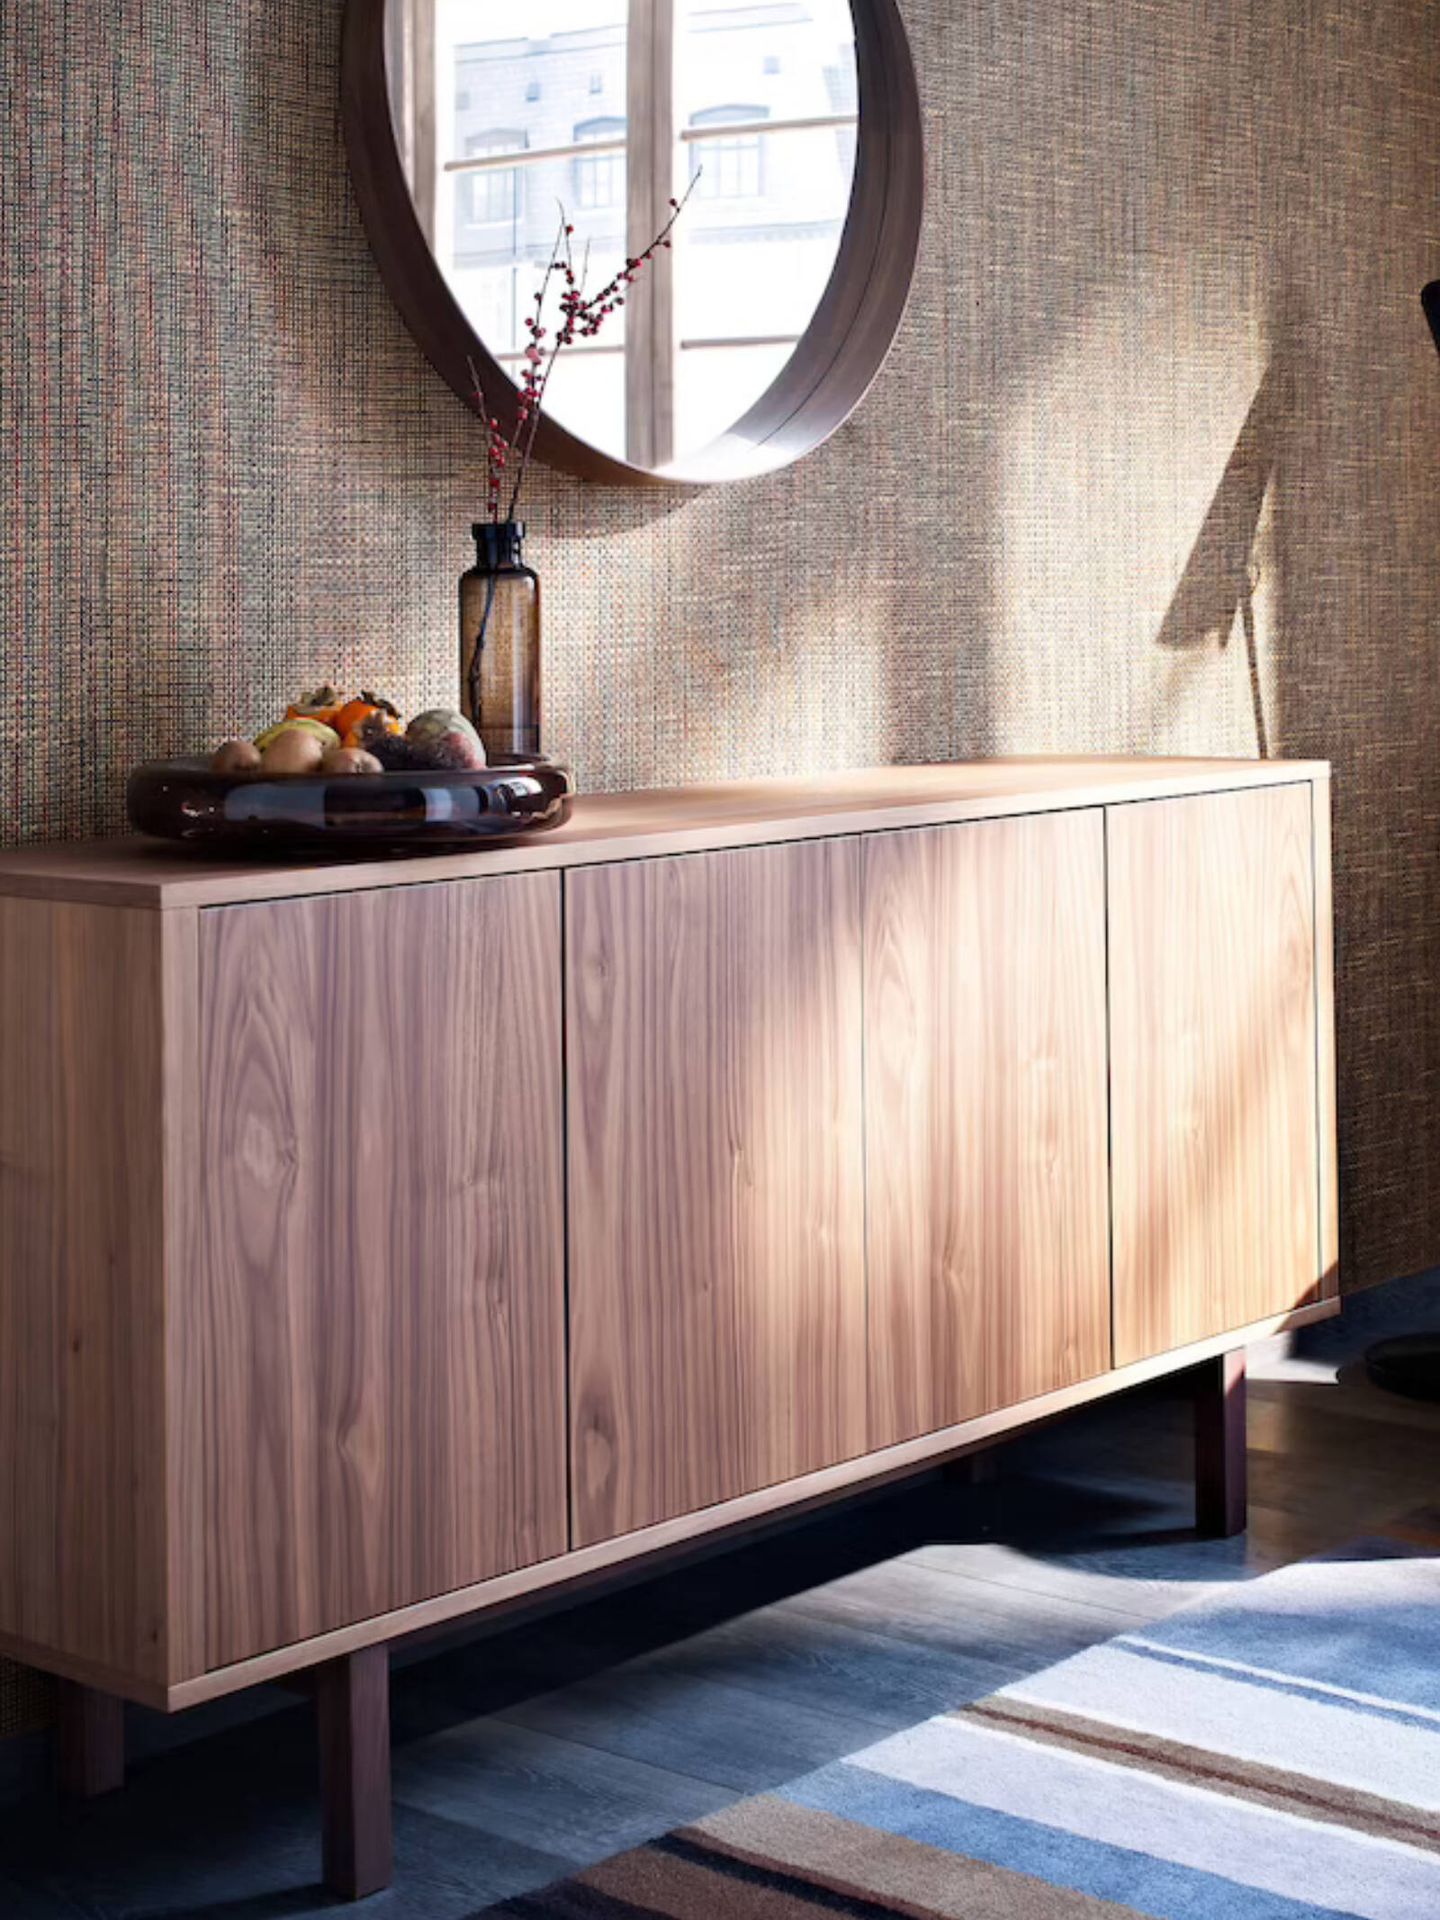 Elige el aparador perfecto para tu salón según el estilo de tu decoración. (Cortesía/Ikea)